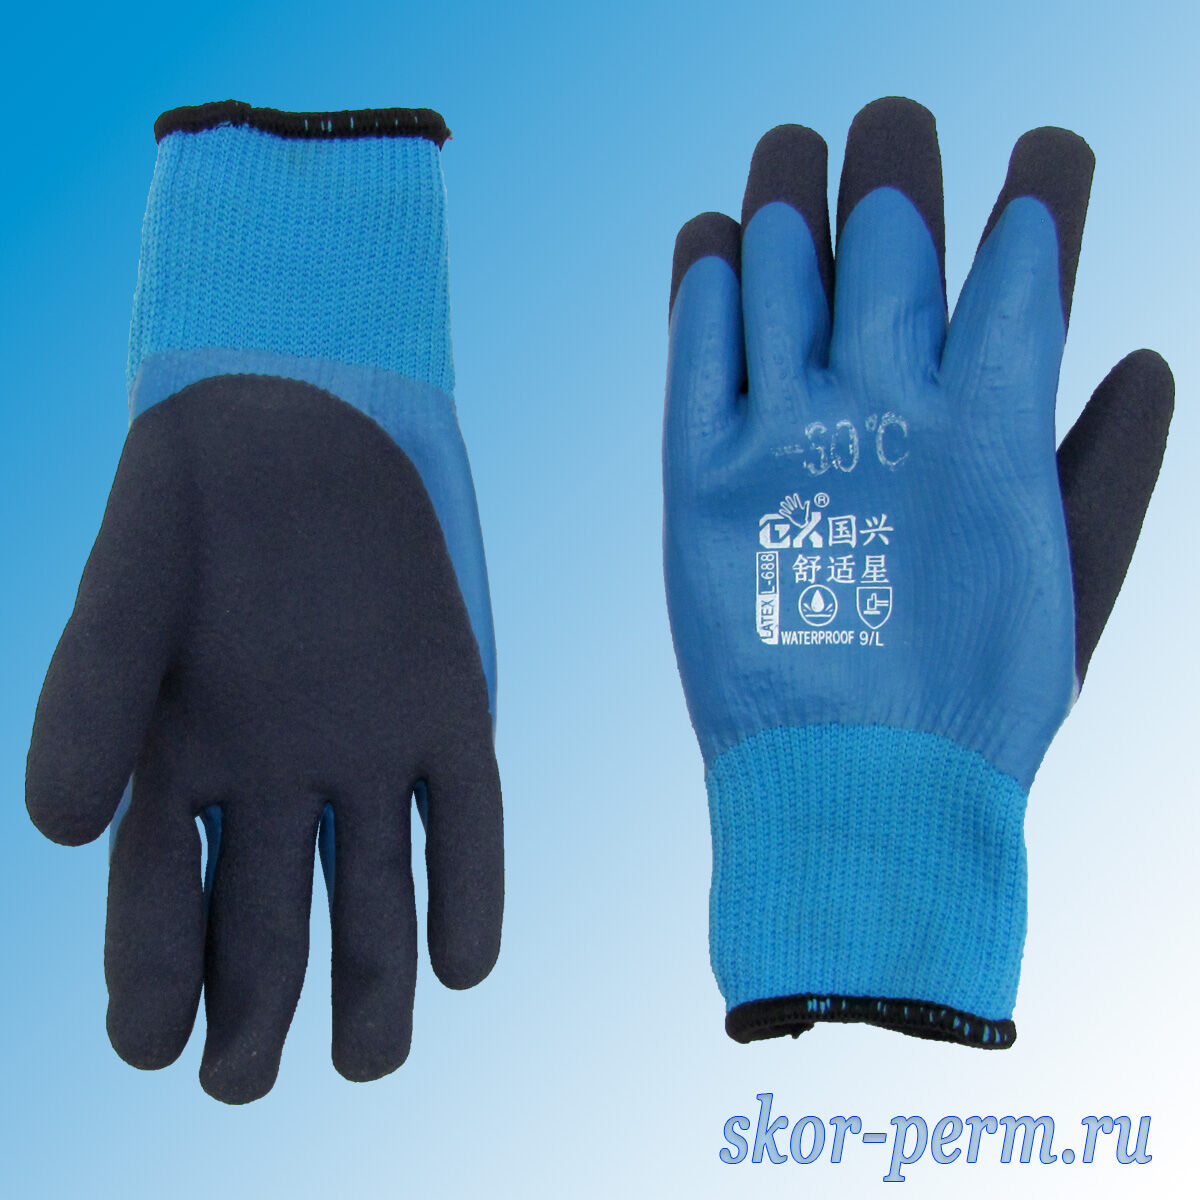 Перчатки акриловые обрезиненные непромокаемые, утепленные эконом, -30°, синие